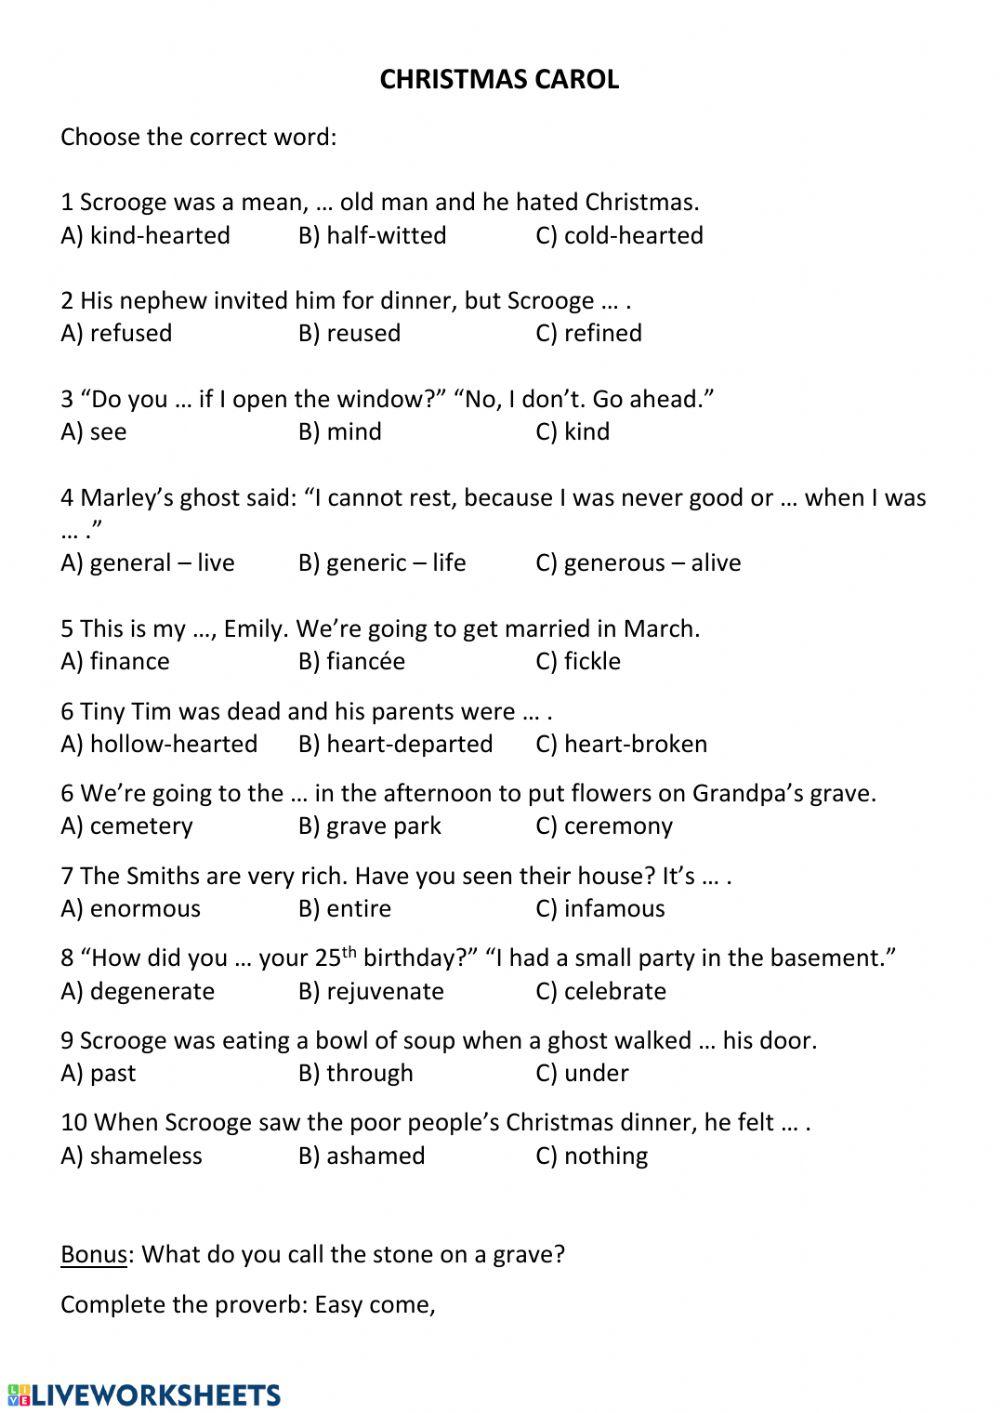 Christmas Carol - vocabulary